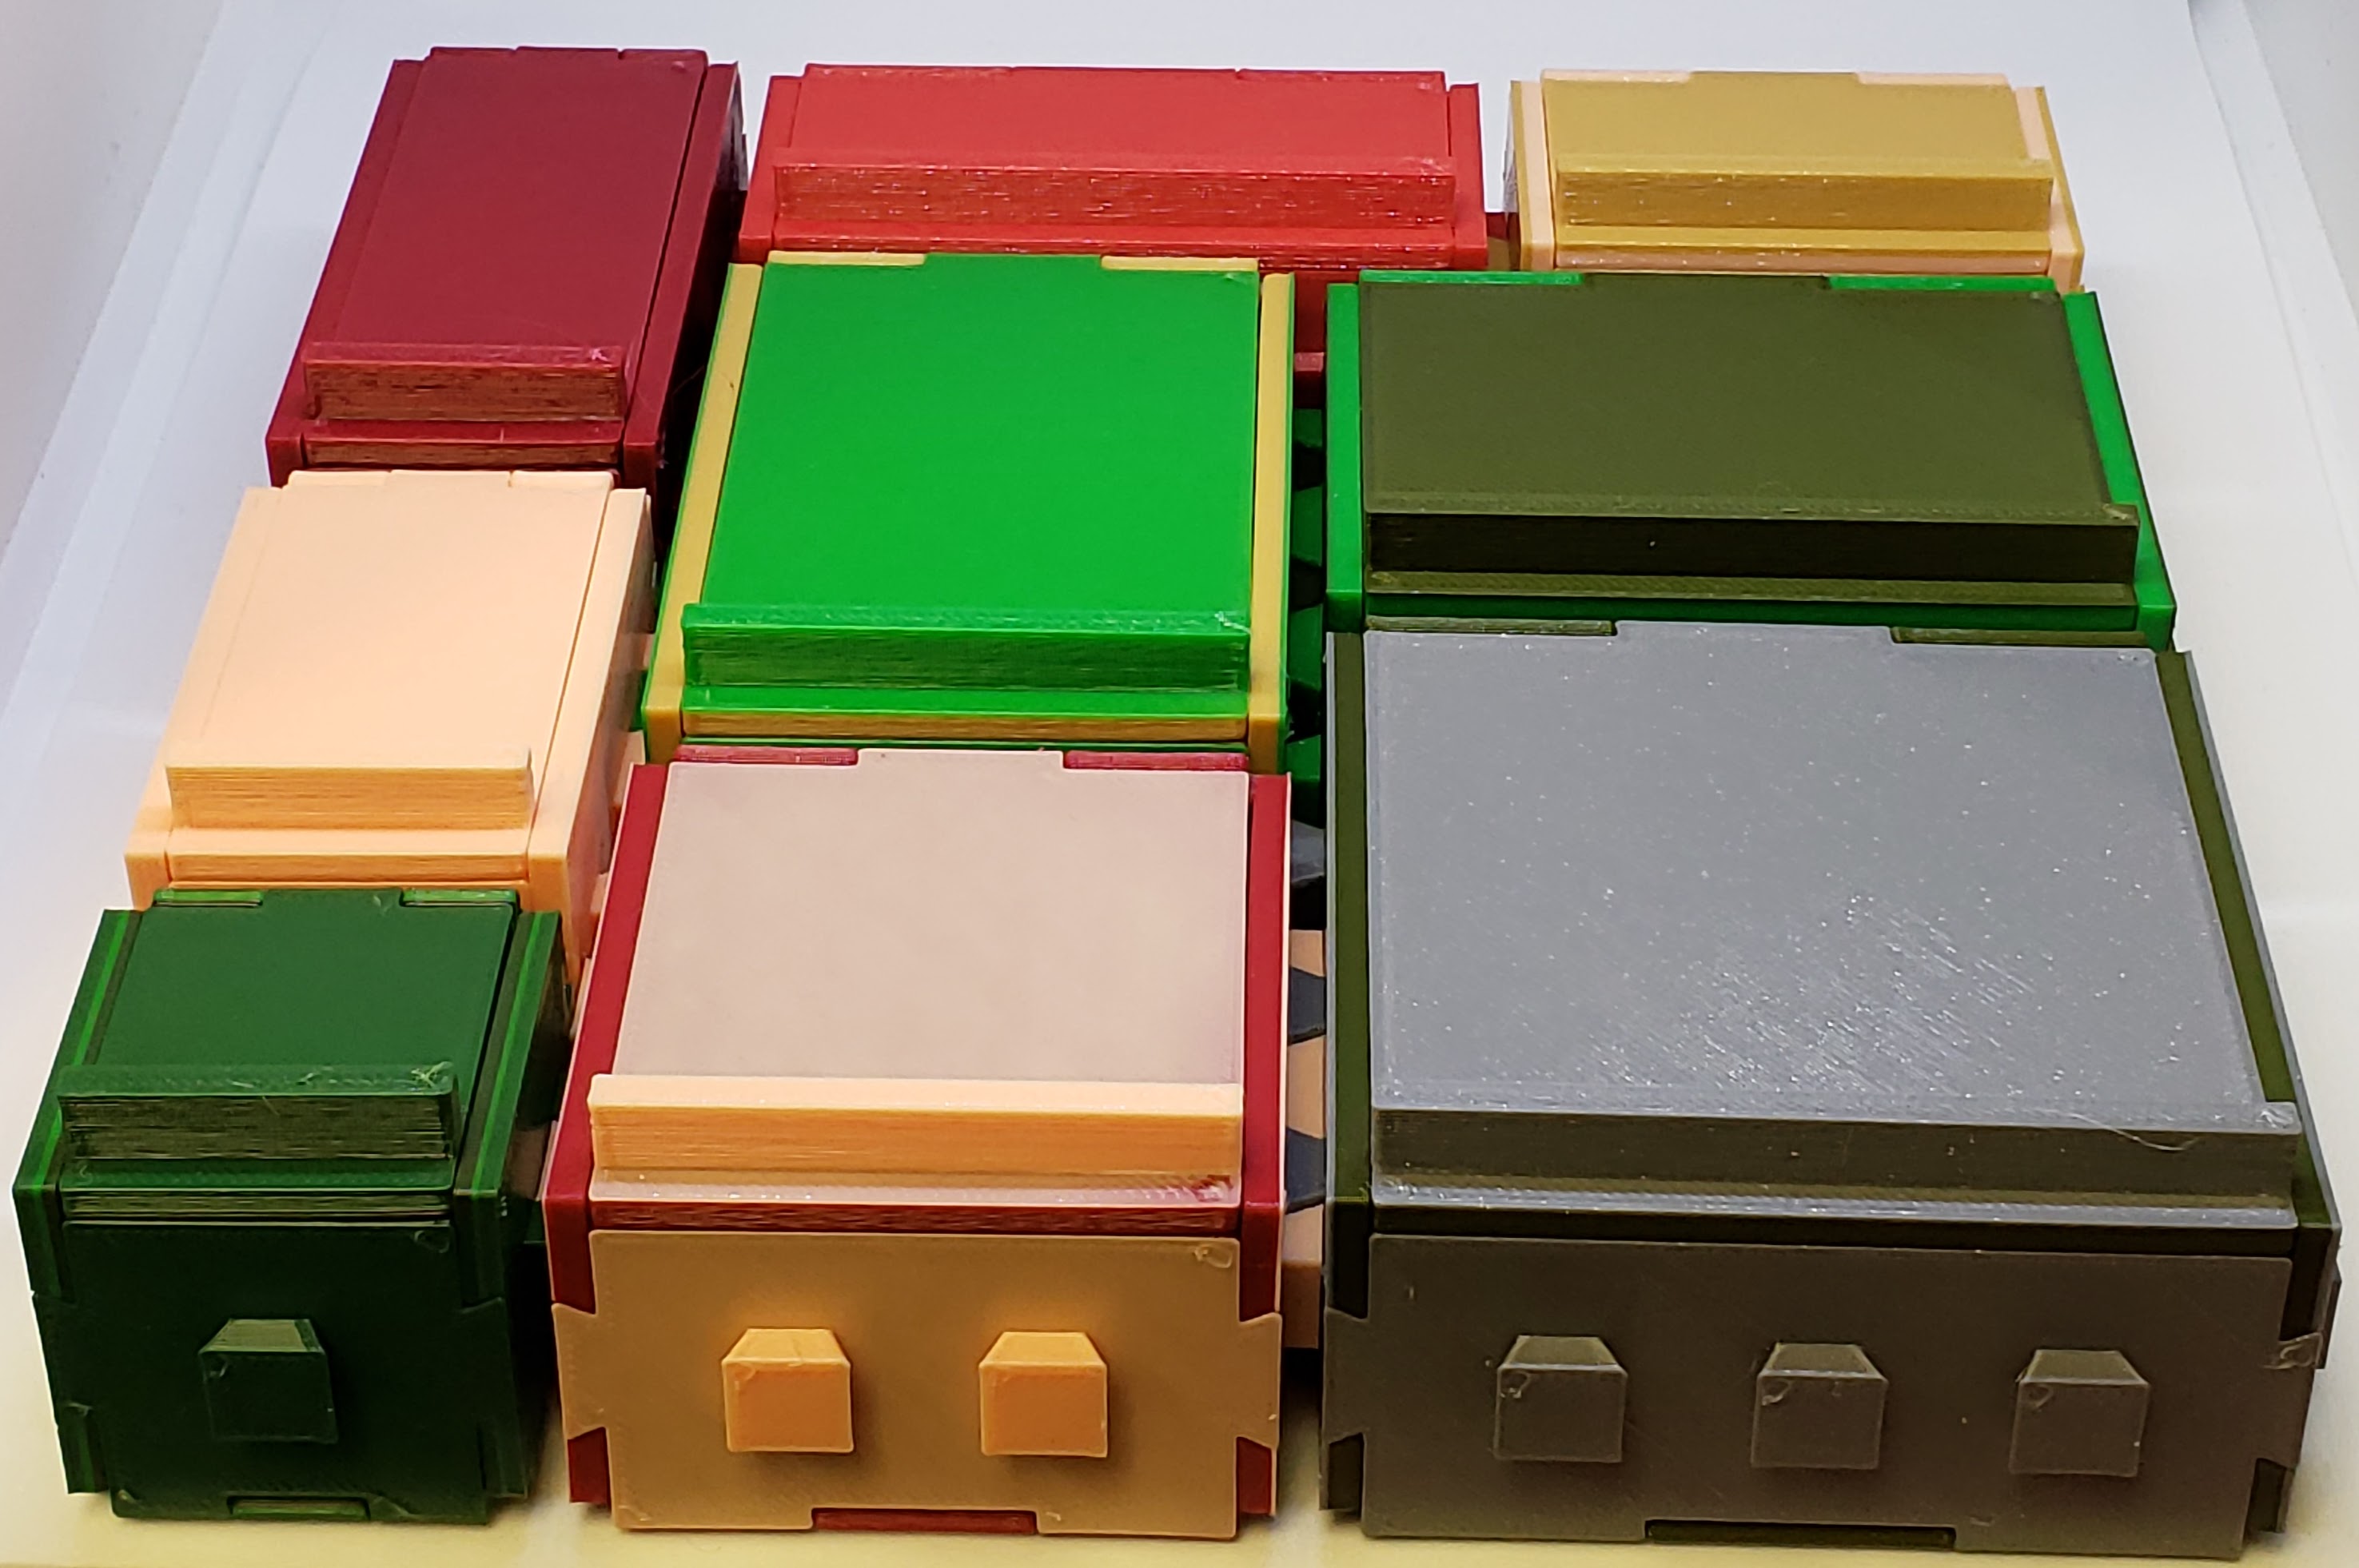 Modular interlocking storage boxes